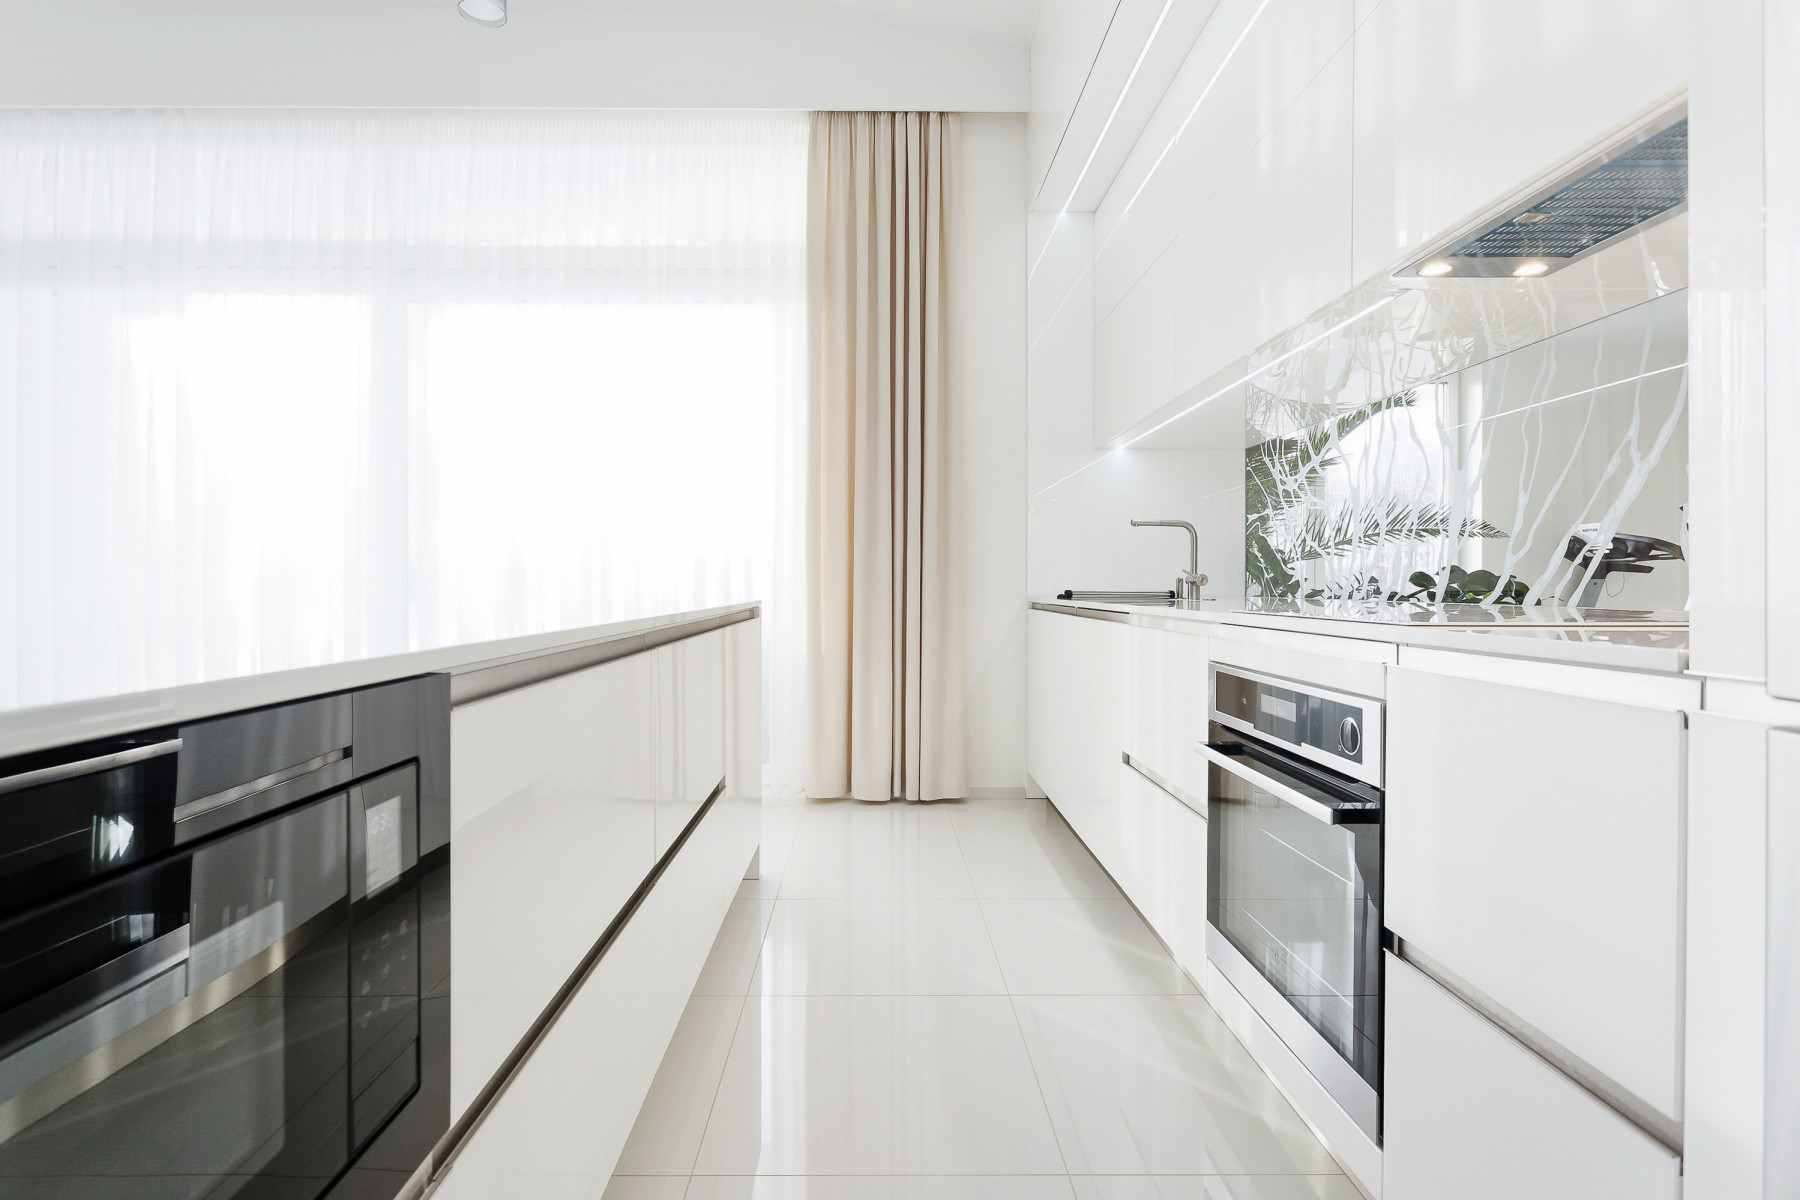 Moderns un gaišs mājoklis ar baltām virtuves iekārtām.